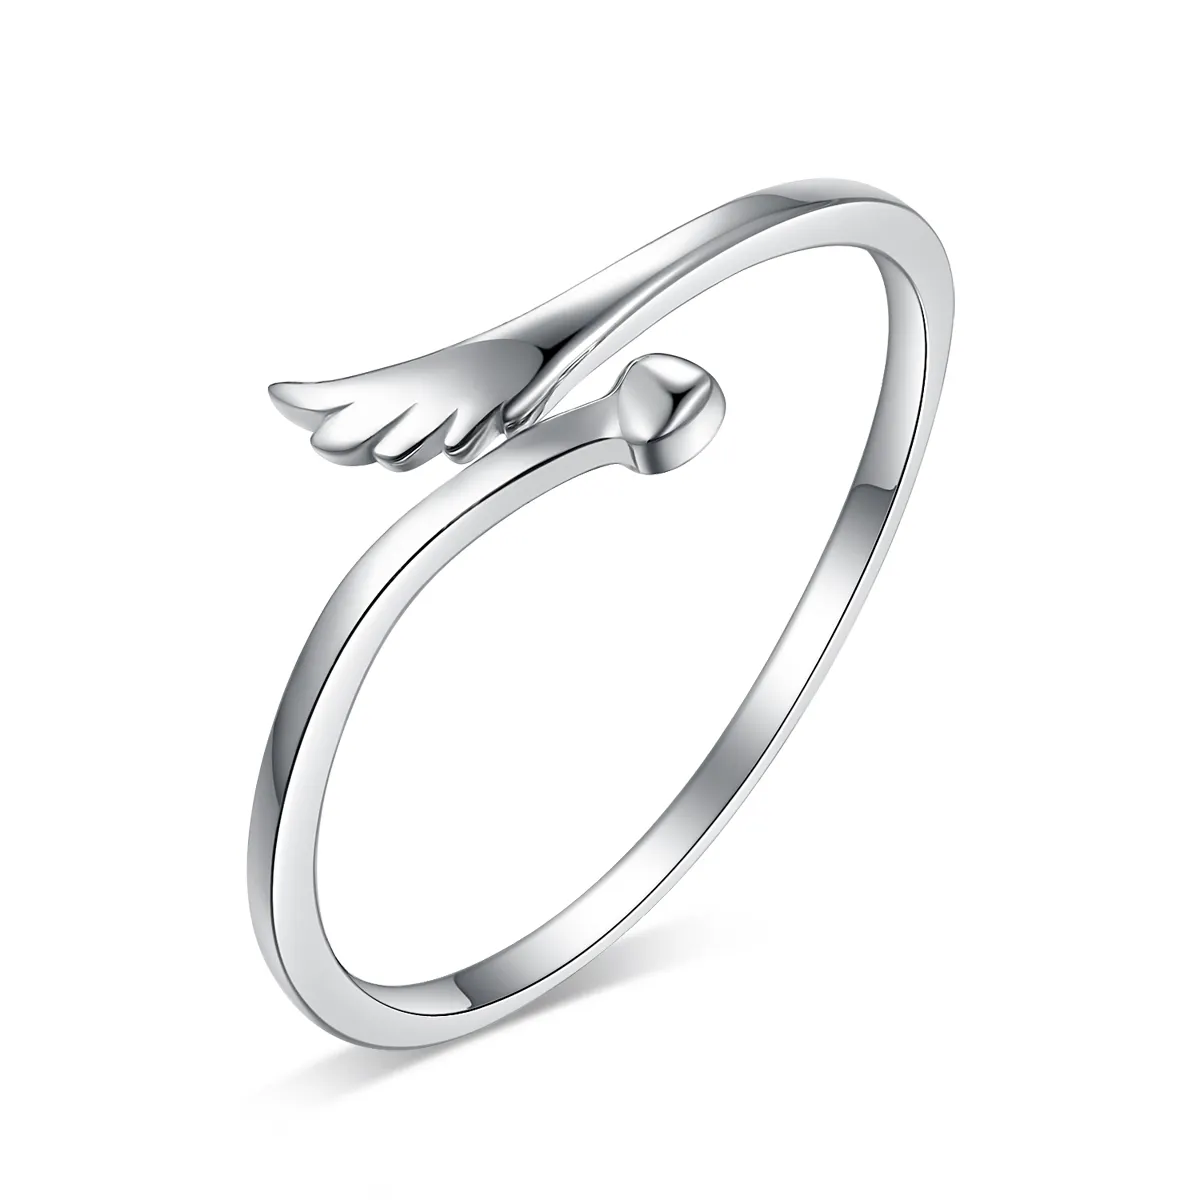 Keiyue Oem Minimalist tasarım 925 gümüş melek kanatları yüzük ayarlanabilir yüzükler kadınlar için